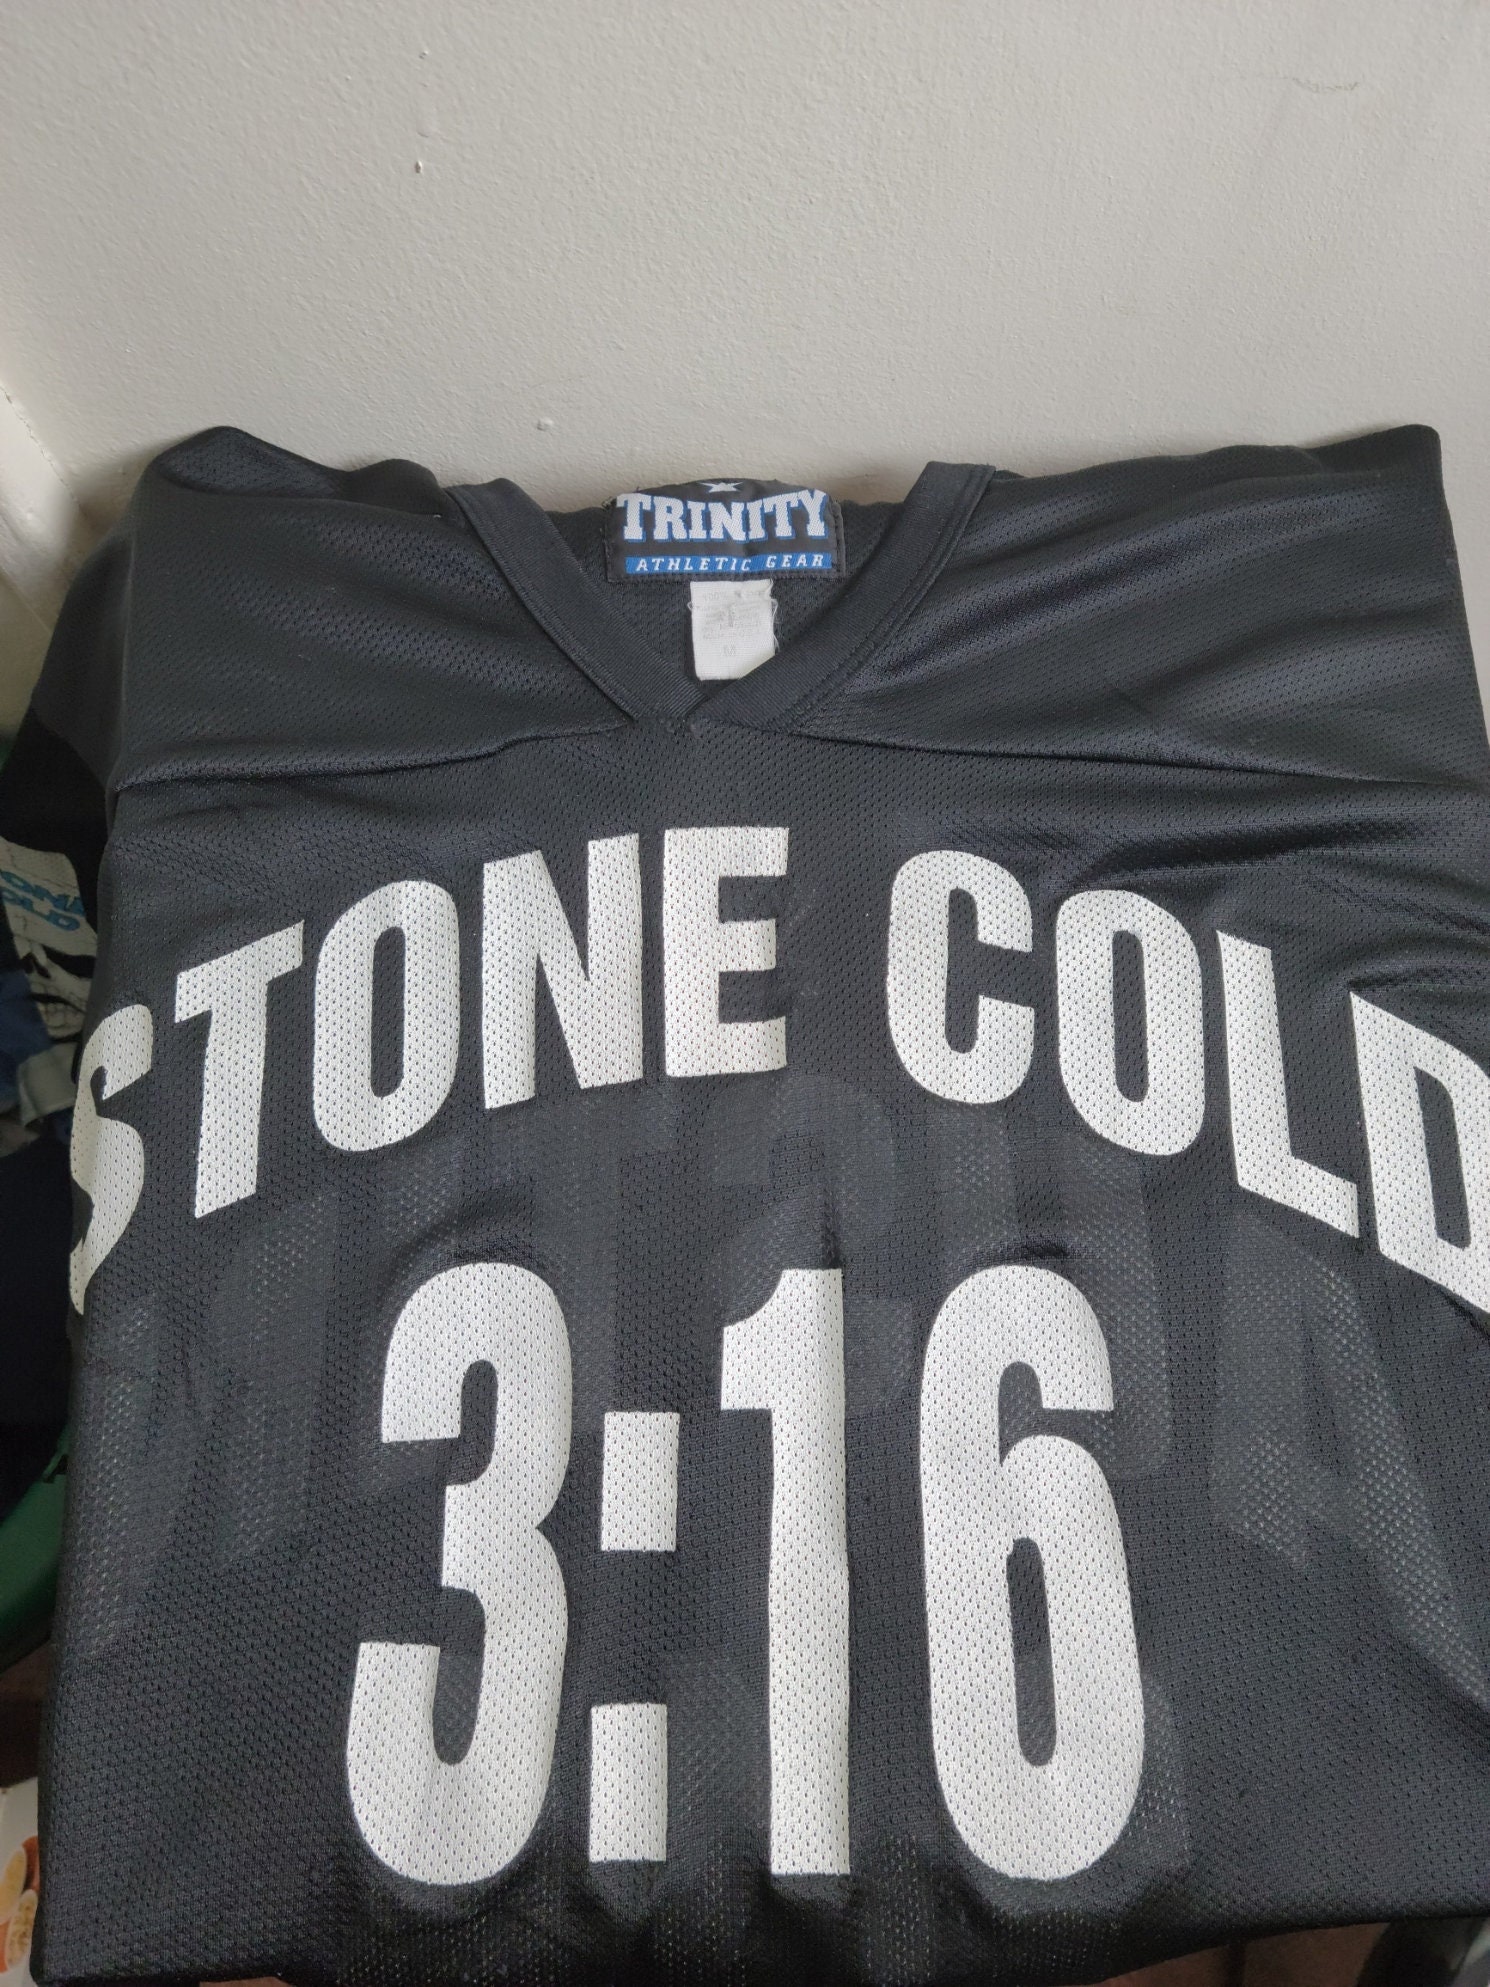 Stone Cold Steve Austin Baltimore Orioles Fanatics Branded 3:16 T